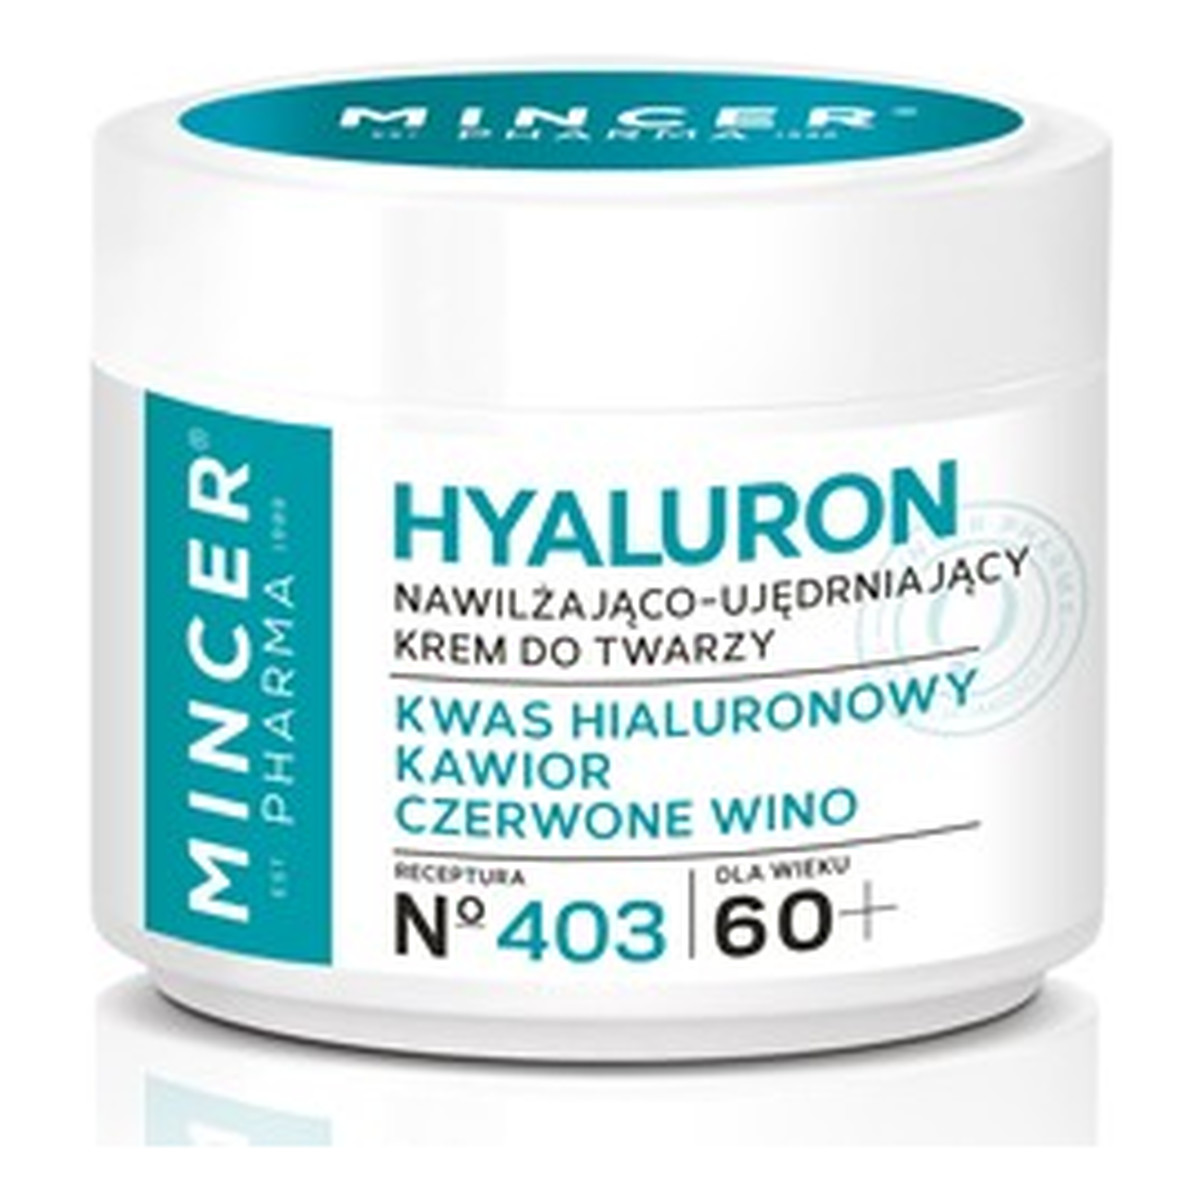 Mincer Pharma Hyaluron 60+ Nawilżająco-Ujędrniający Krem Do Twarzy No403 50ml